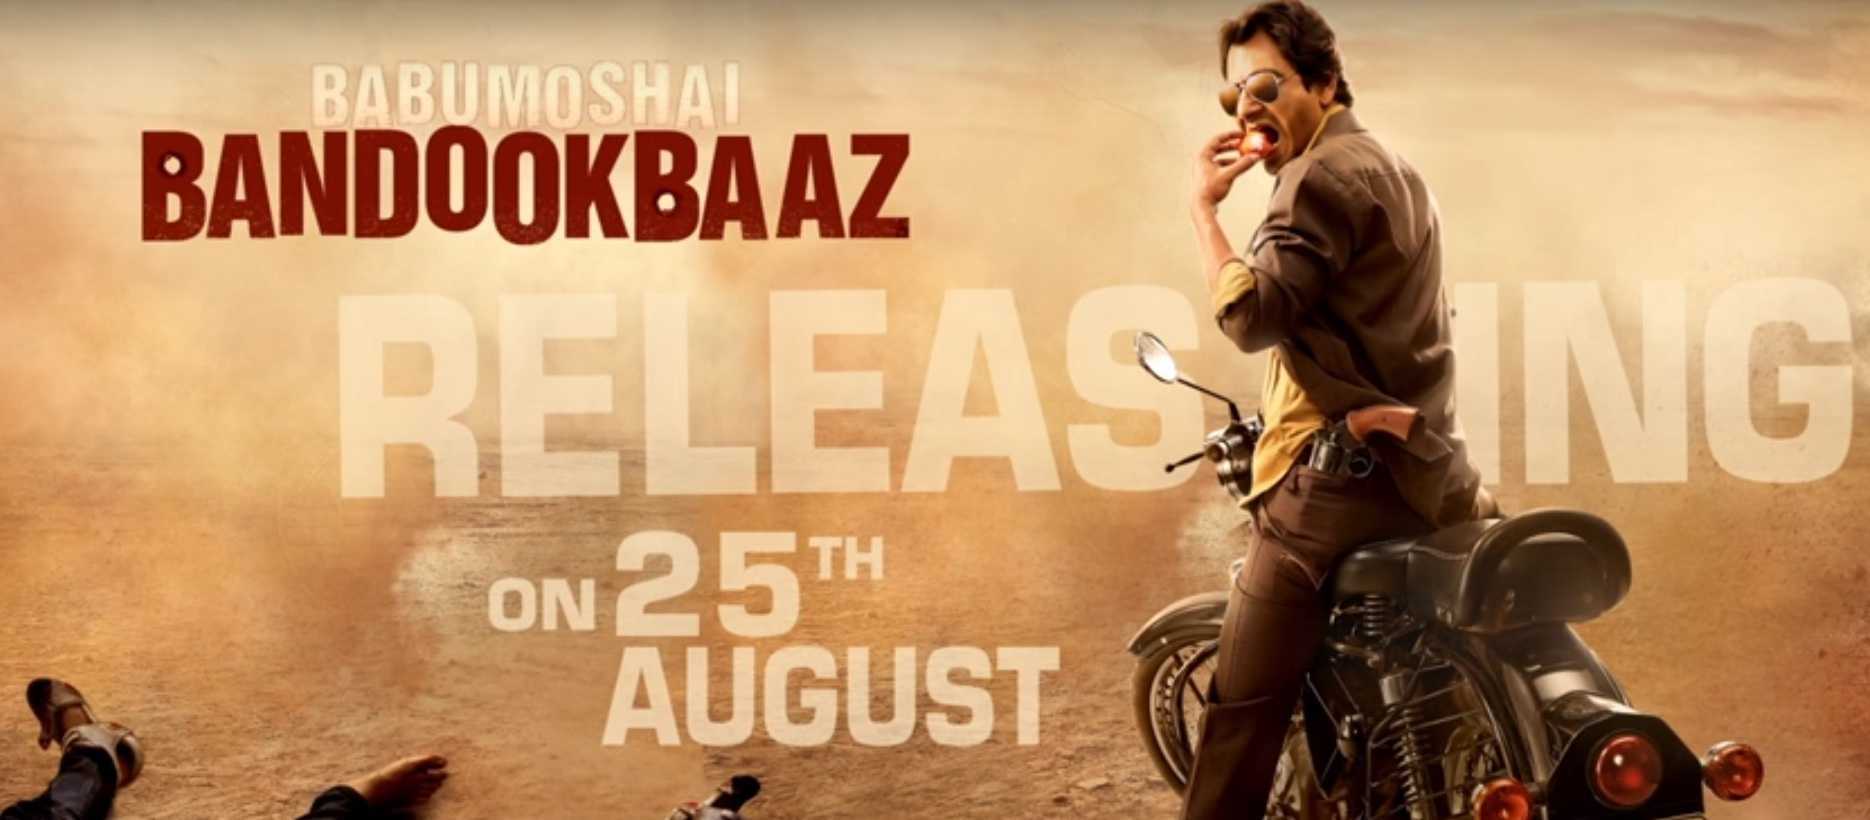 Babumoshai Bandookbaaz movie review: Nawazuddin Siddiqui has helmed his character rightfully